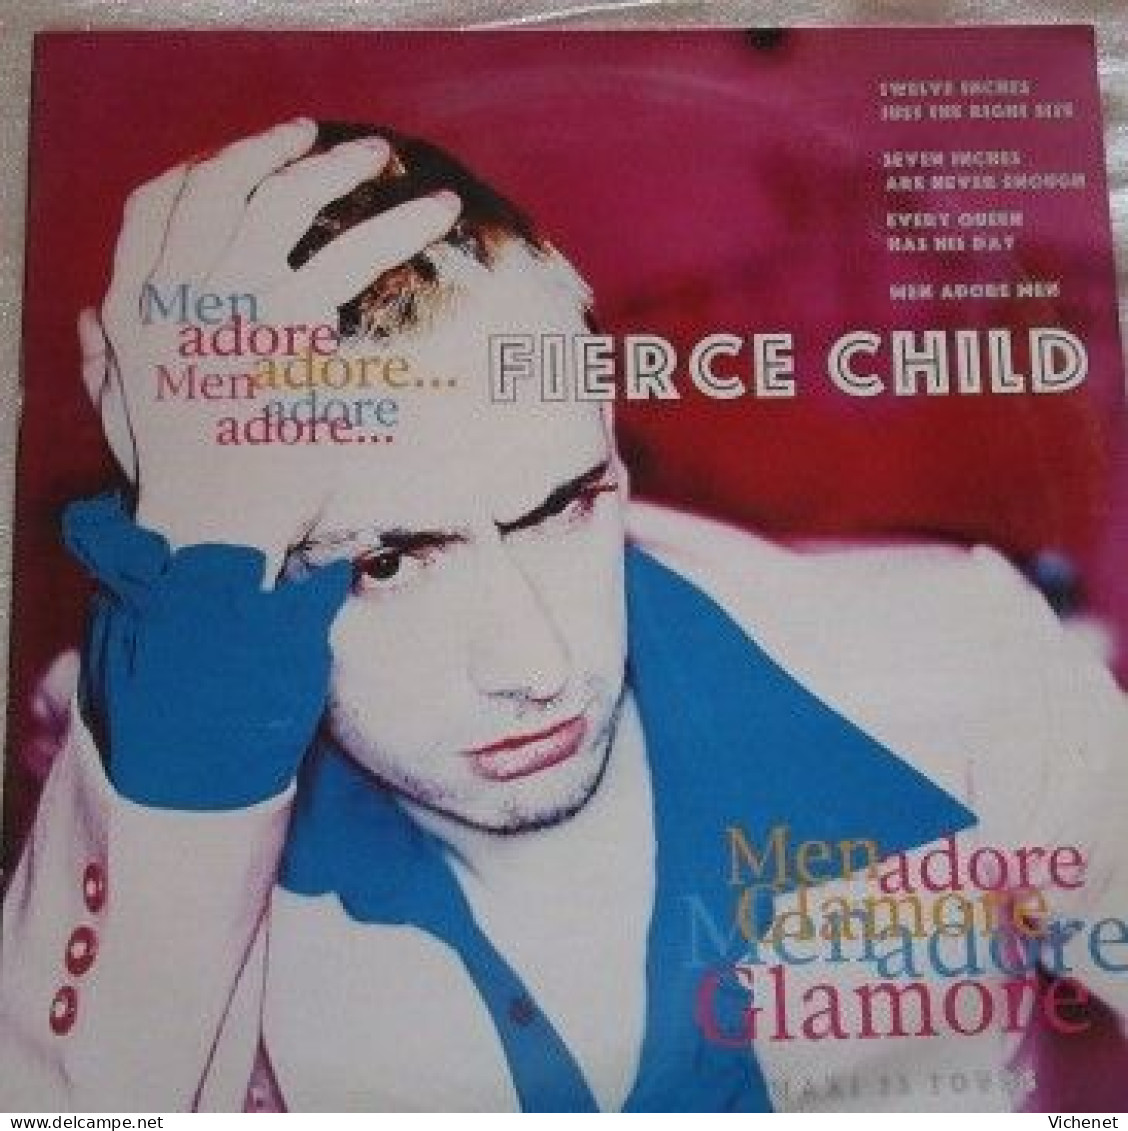 Fierce Child – Men Adore - Maxi - 45 T - Maxi-Single